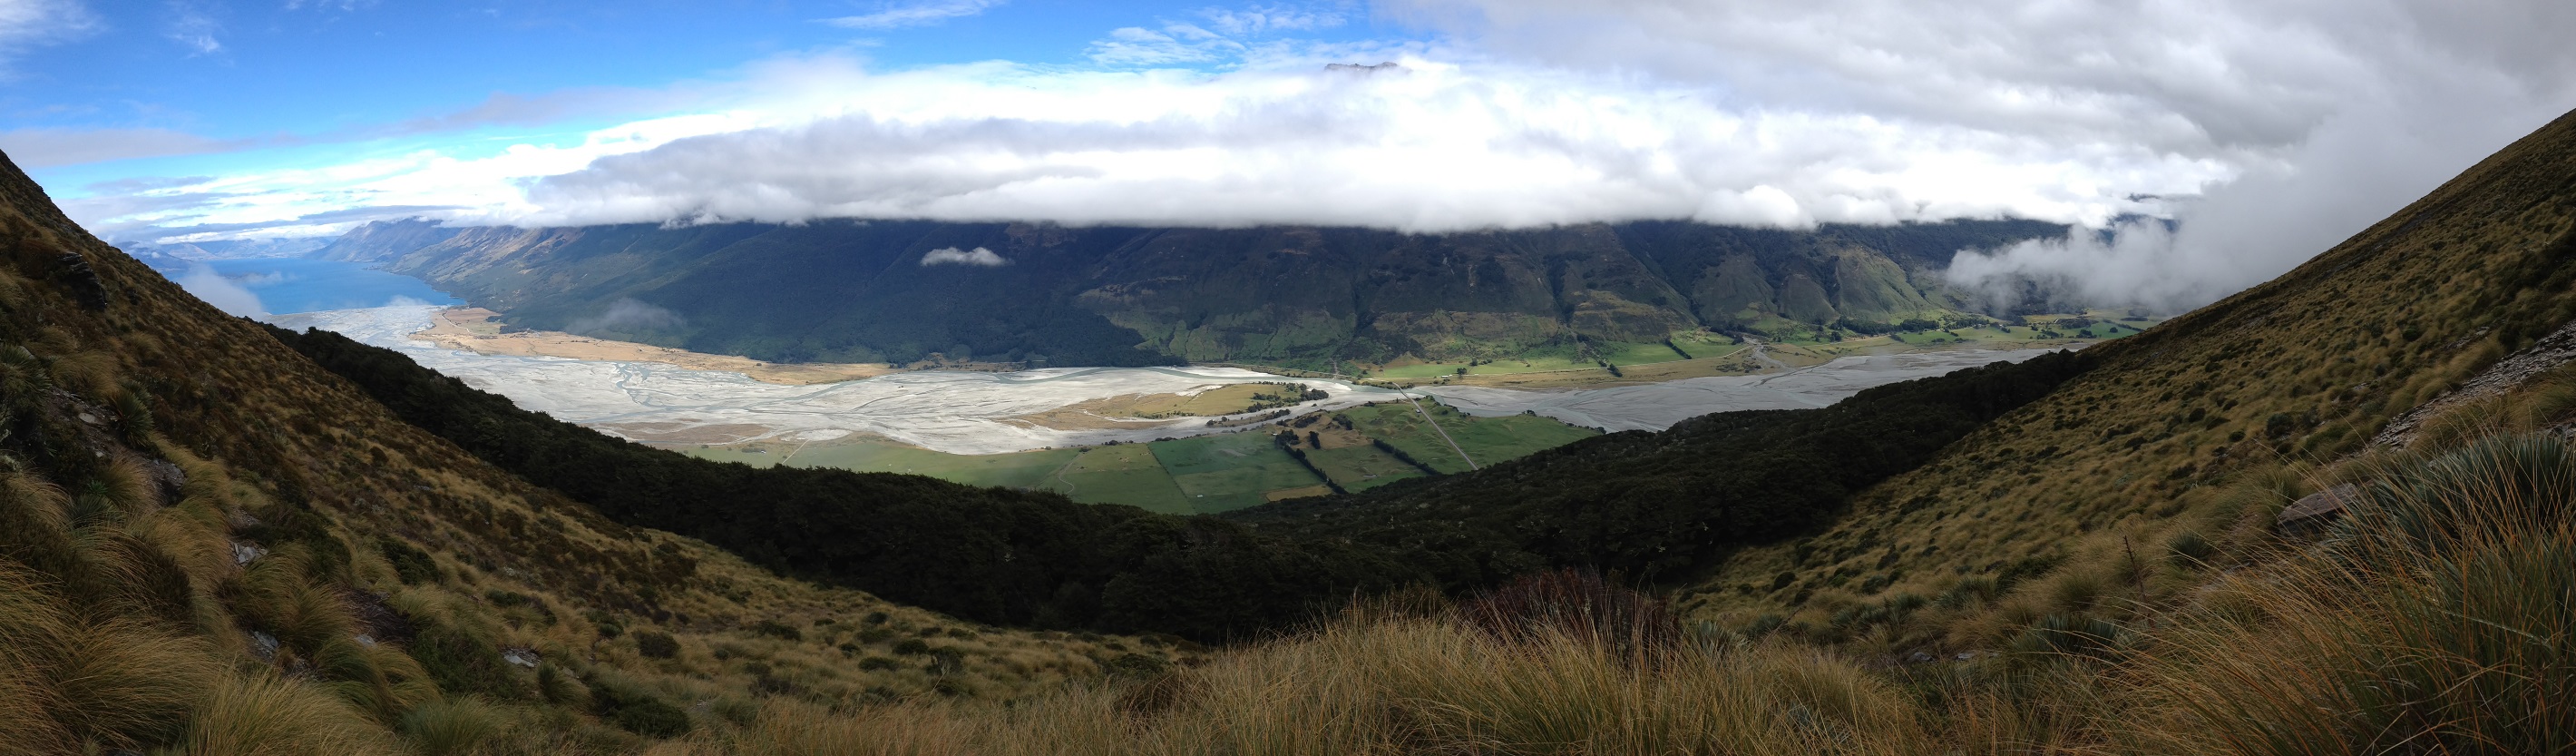 Vue panoramique sur la vallée de la Dart River et le lac Wakatipu